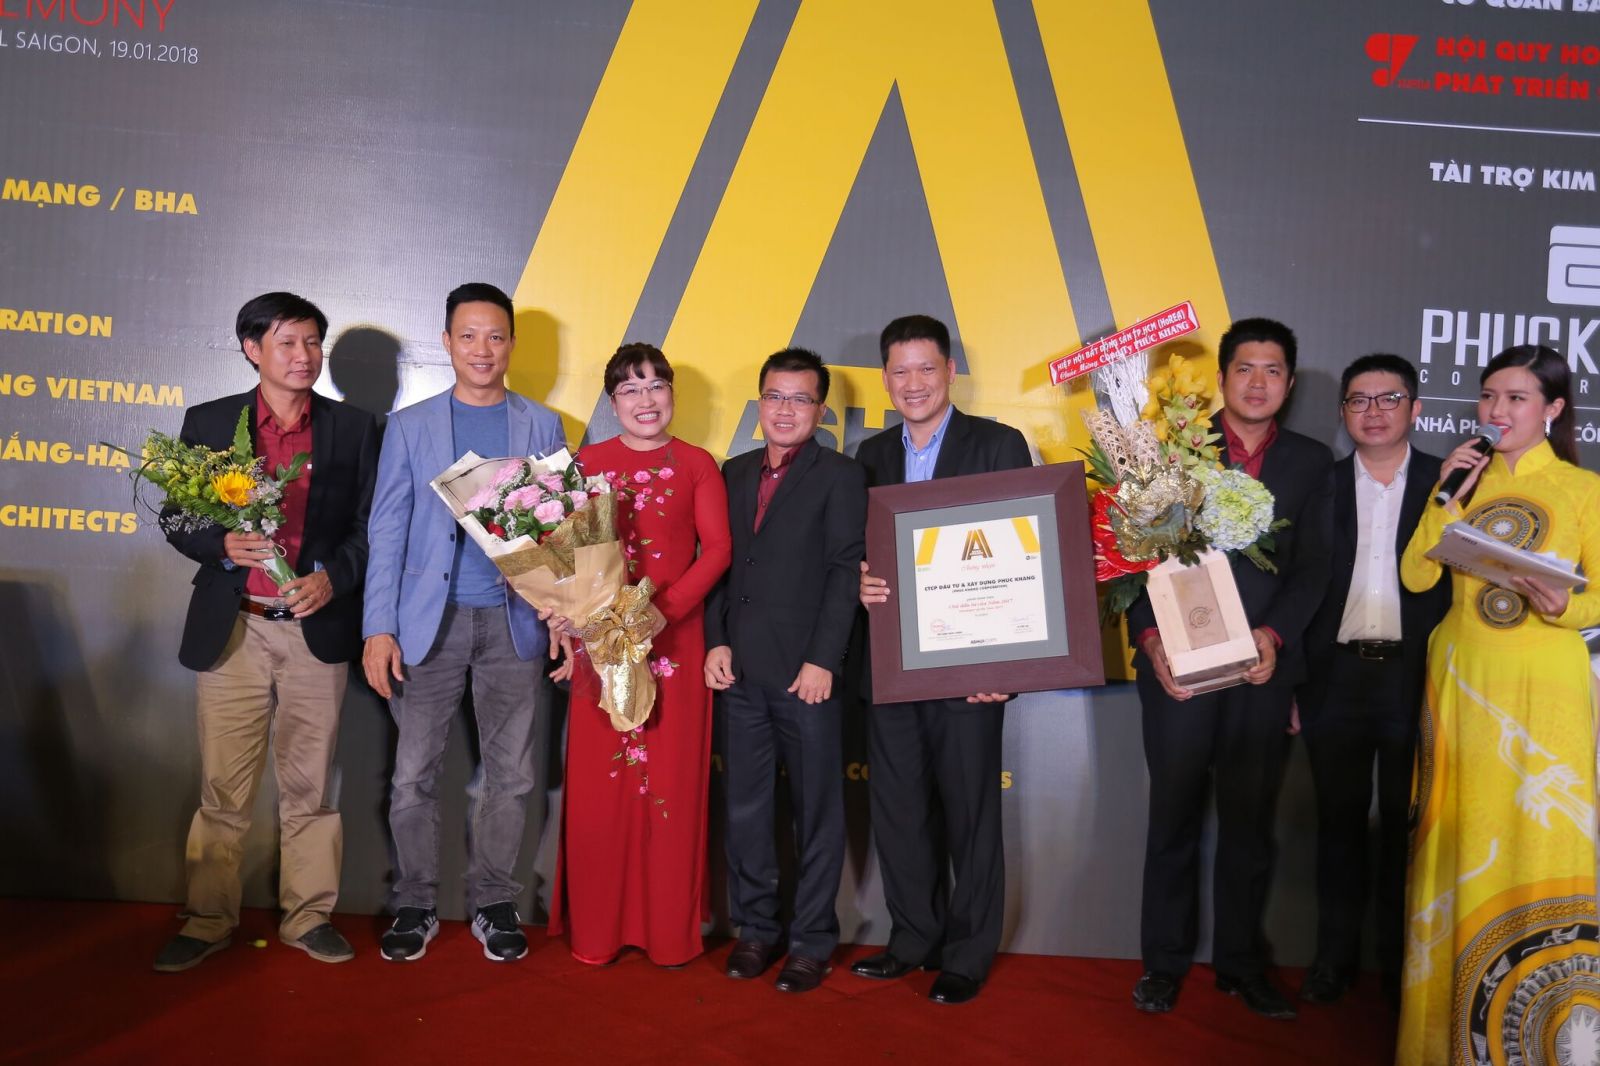 Hình: Đại diện Nhà phát triển công trình xanh Phuc Khang Corporation được trao danh hiệu “Developer of the year” – Ashui Awards 2017.